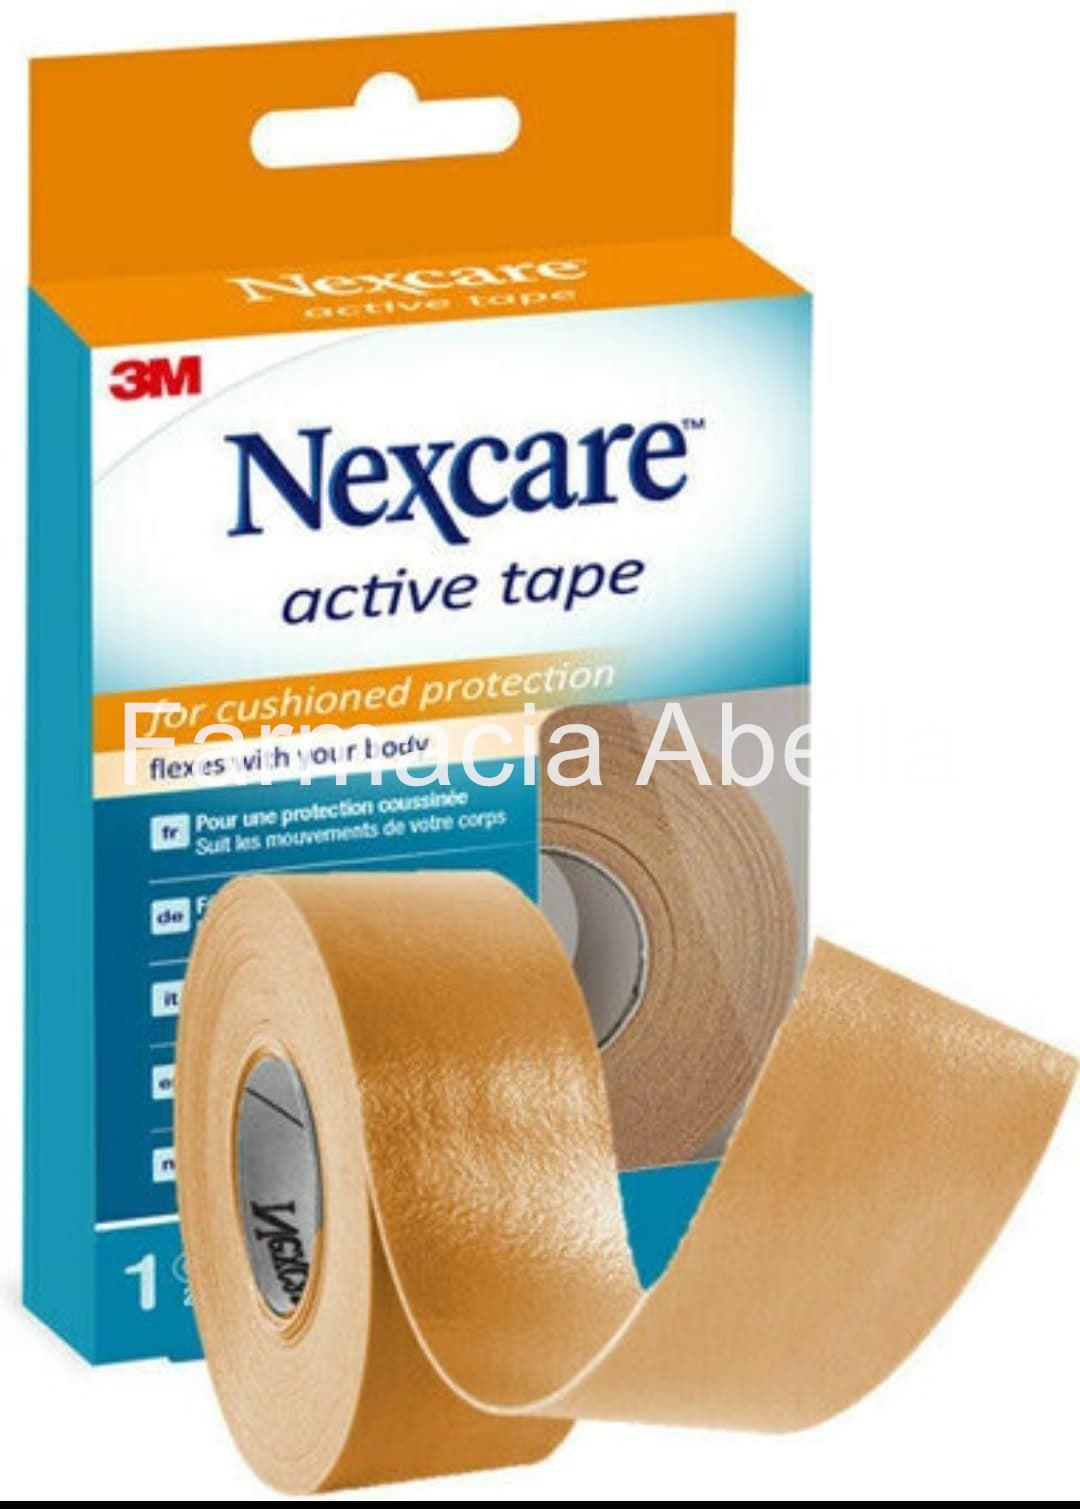 Nexcare 3M active tape 2,5 cm x 4,5 m - Imagen 1